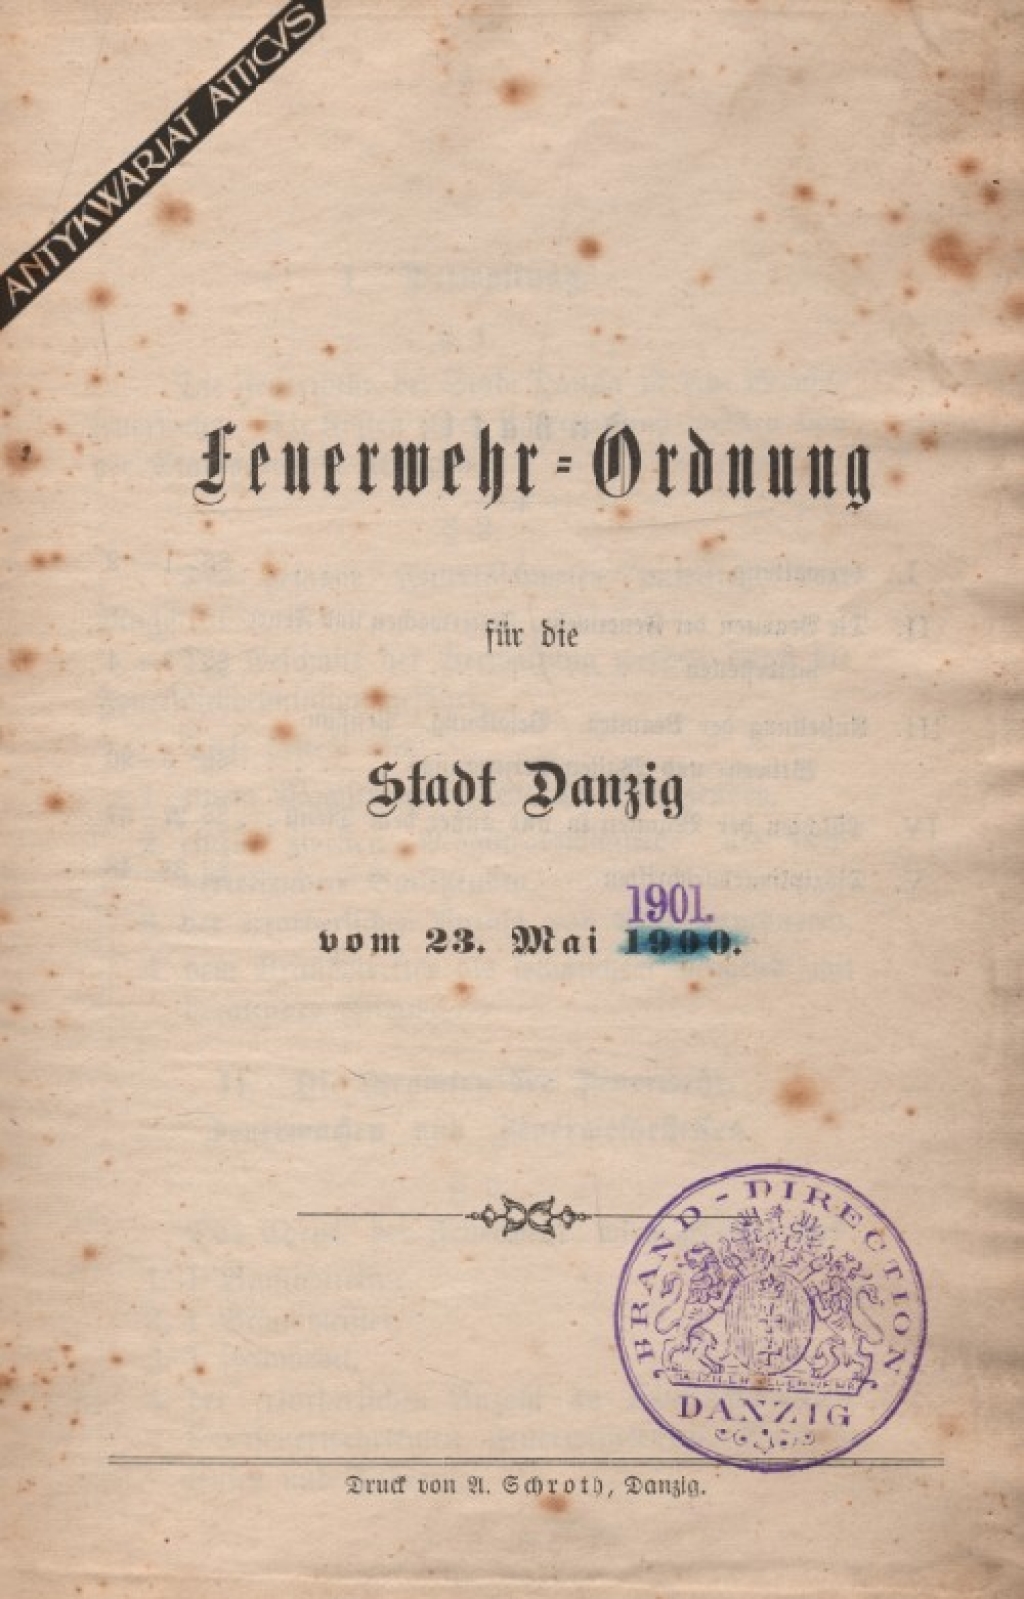 Feuerwehr-Ordnung fur die Stadt Danzing vom 23 Mai 1901